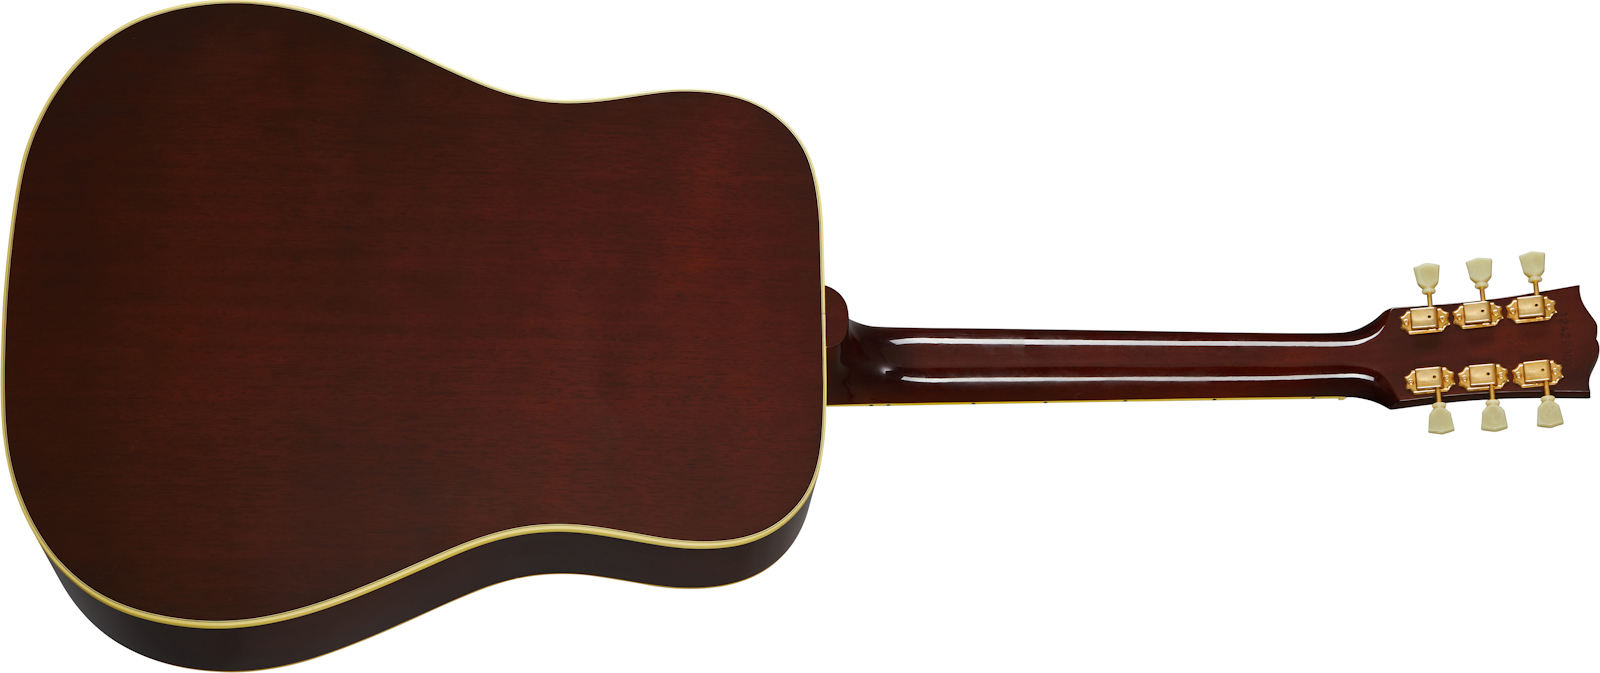 Gibson Hummingbird Original 2020 Dreadnought Epicea Acajou Rw - Antique Natural - Guitare Electro Acoustique - Variation 1